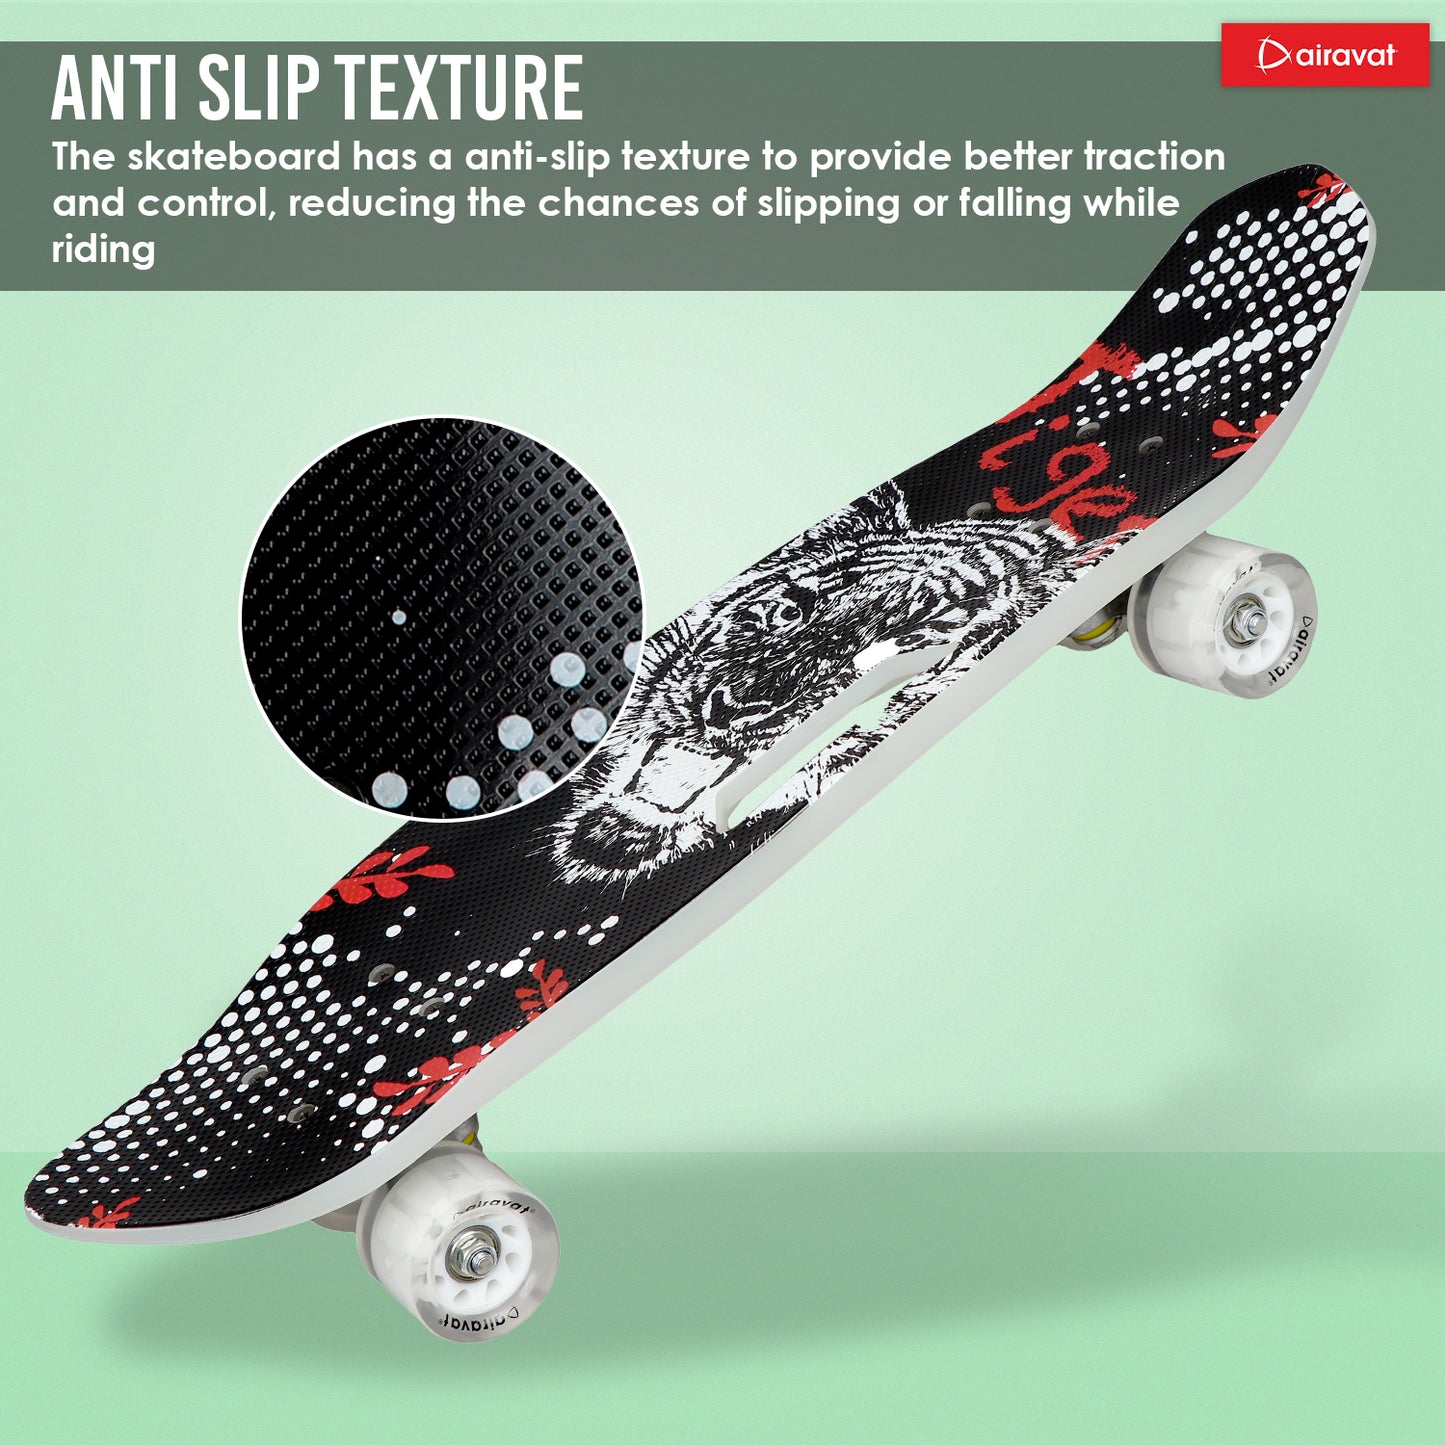 7818-skateboard-style5-anti-slip-texture